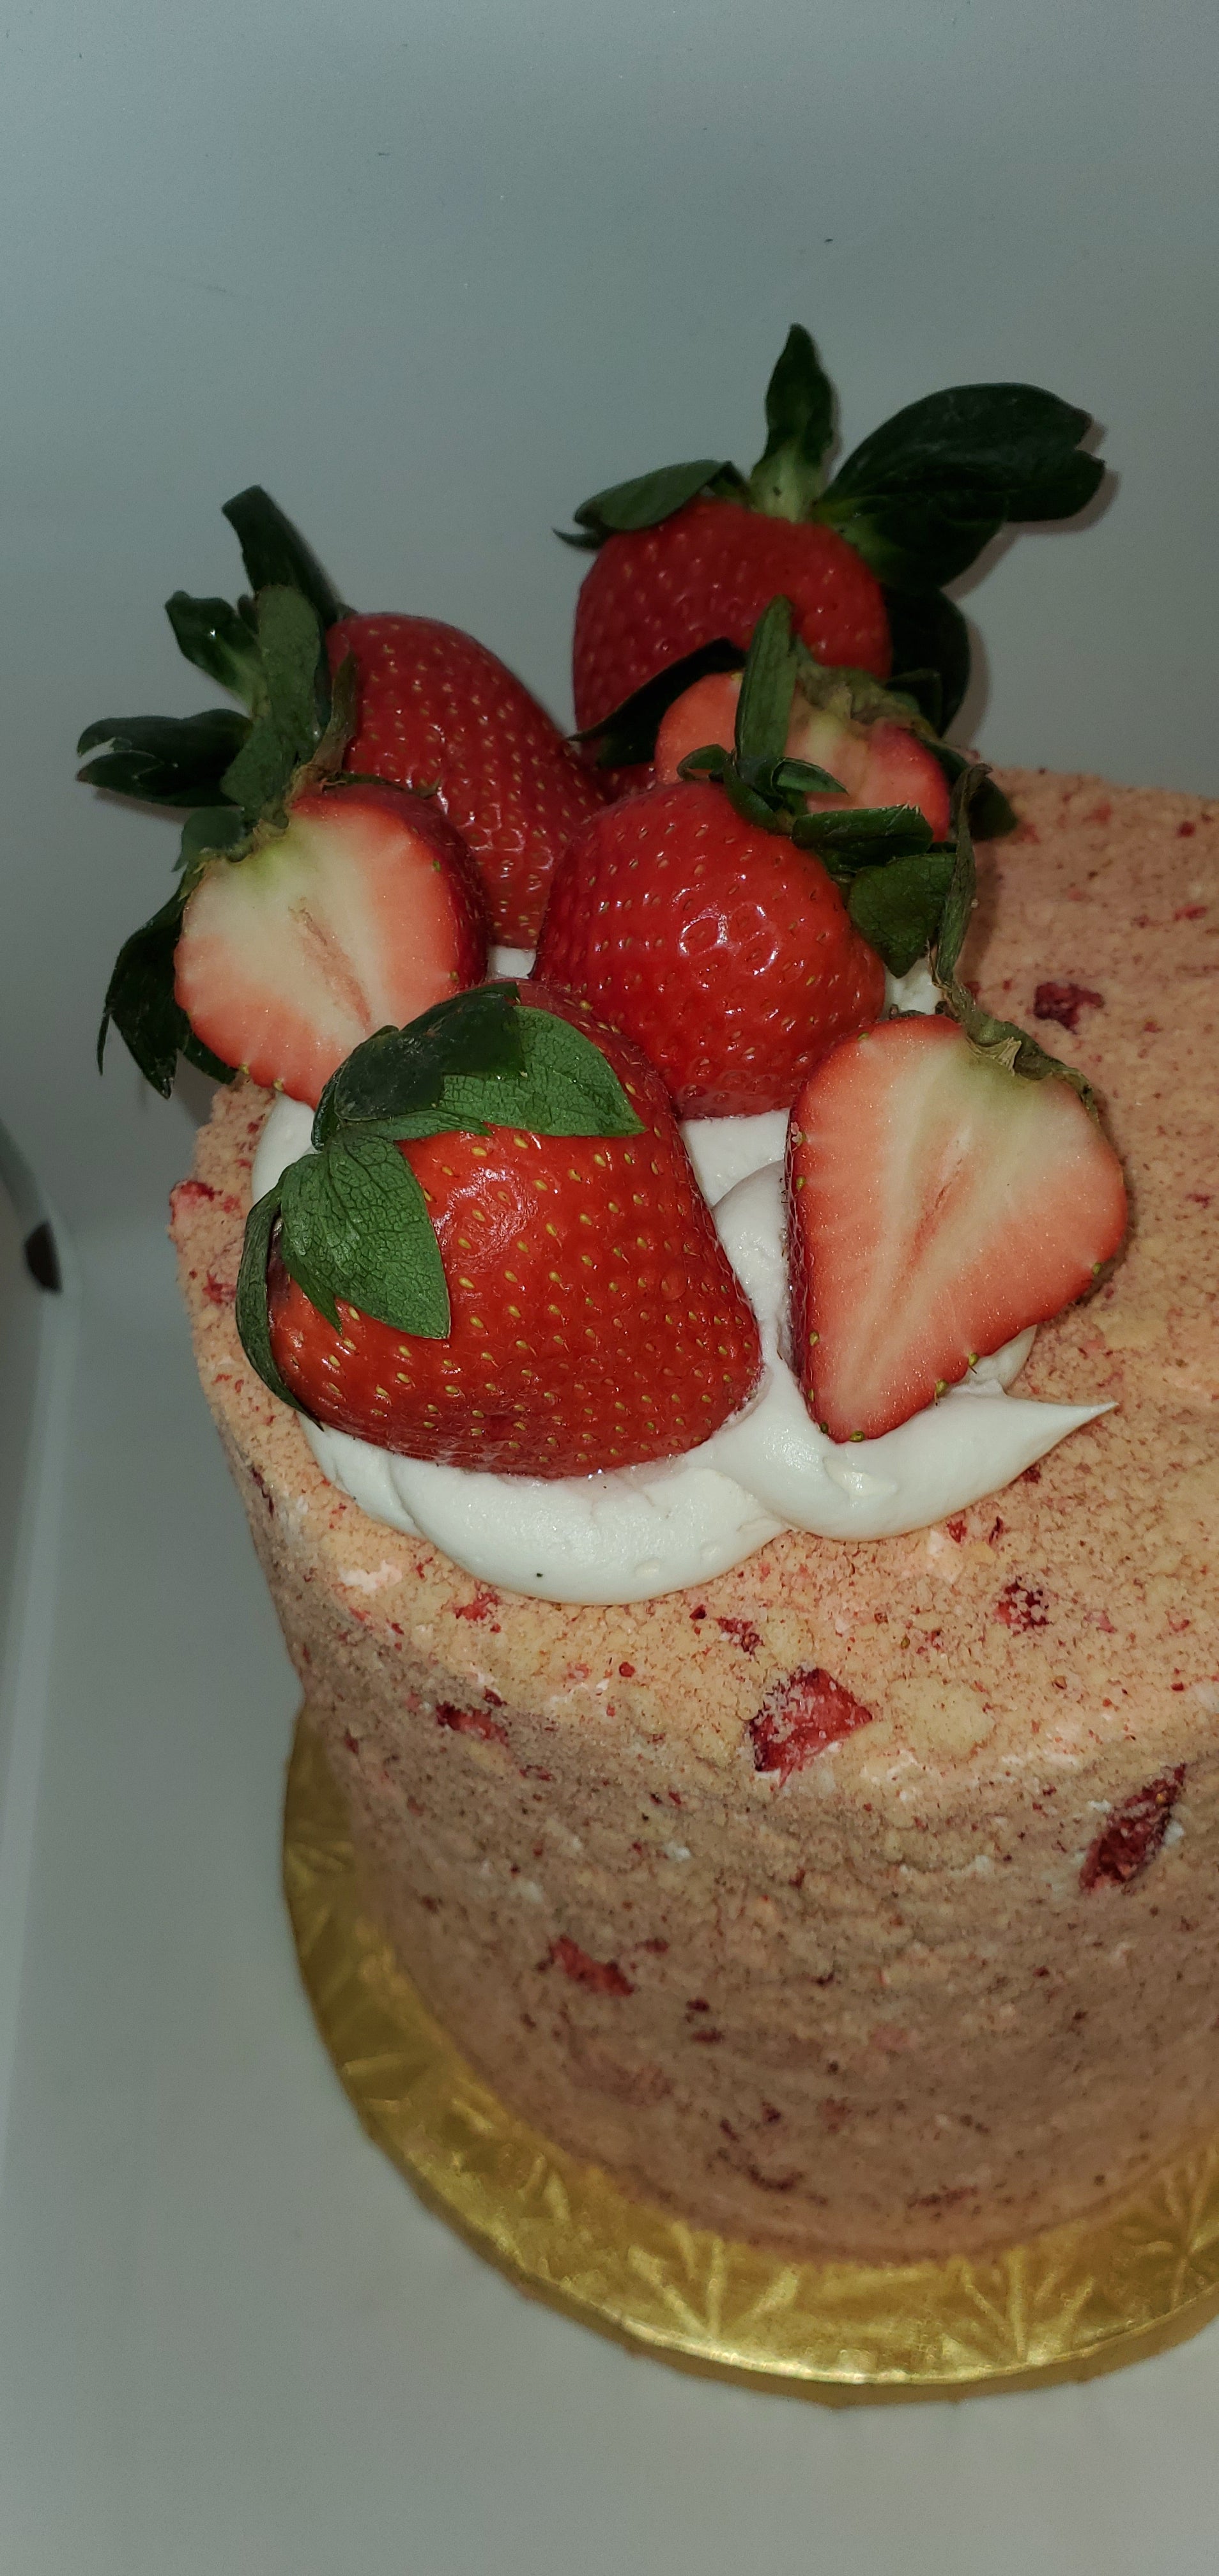 Vegan Strawberry Shortcake Cake w/ fresh strawberry filling